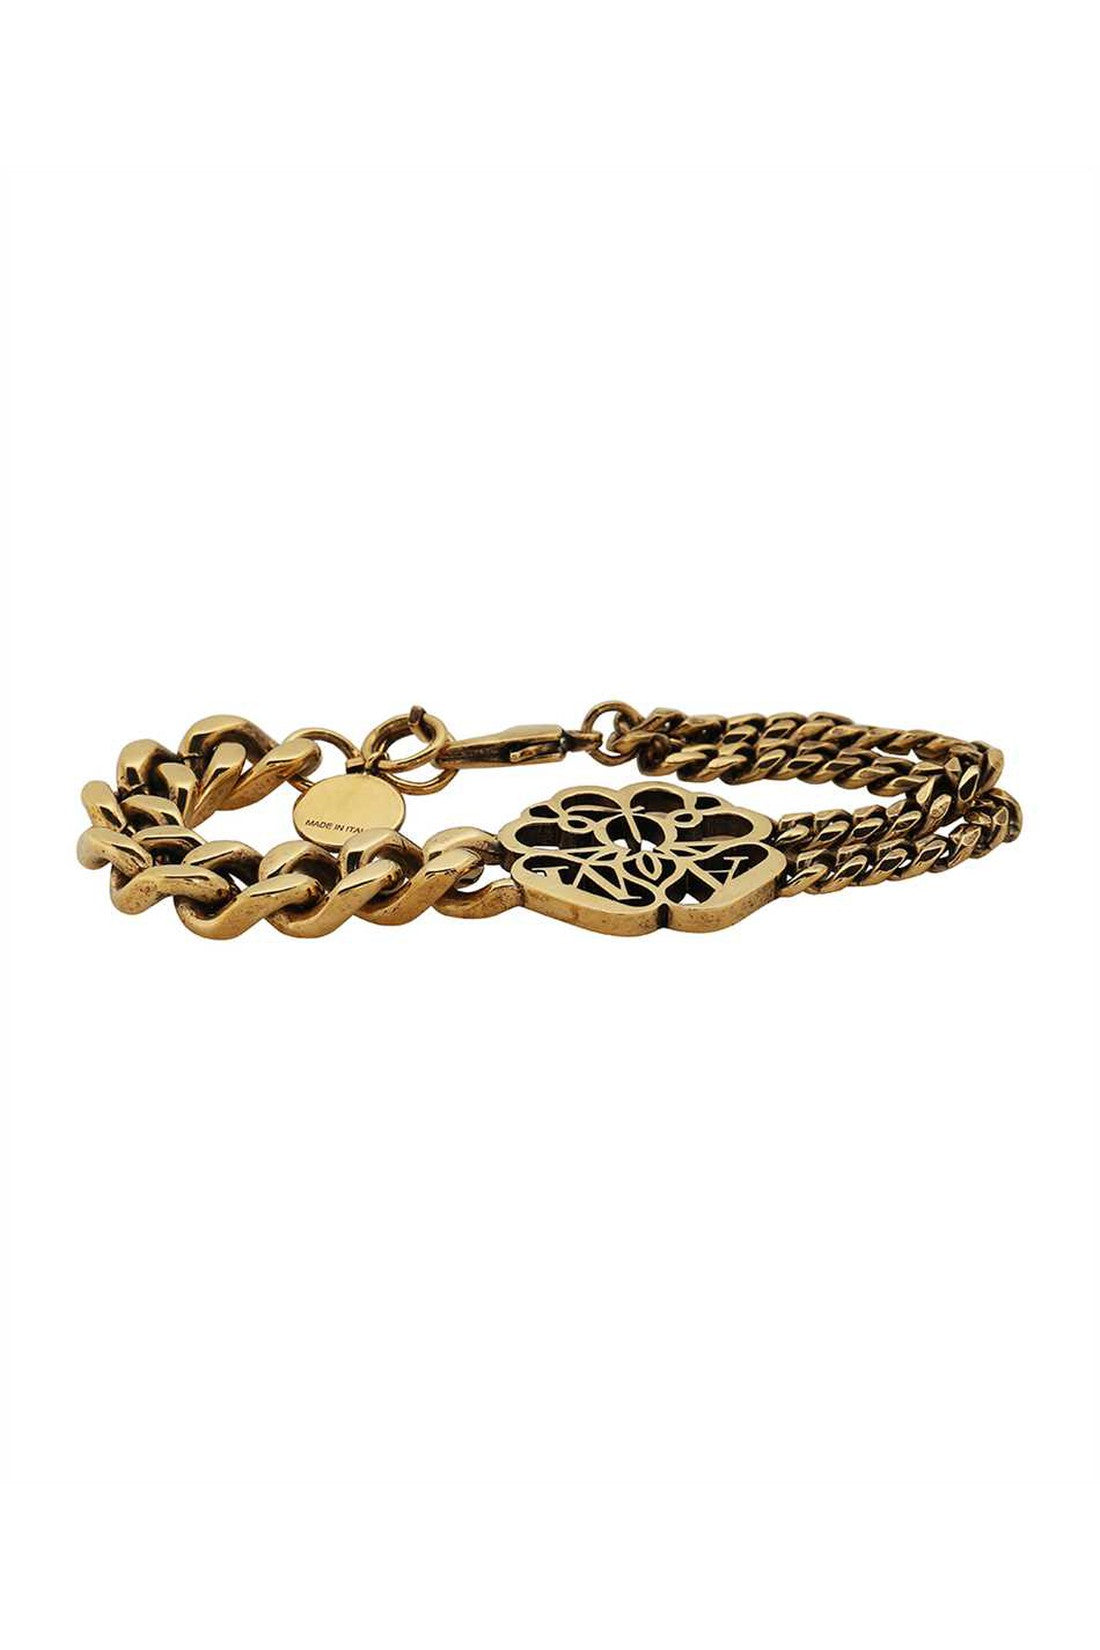 Gold-toner brass bracelet